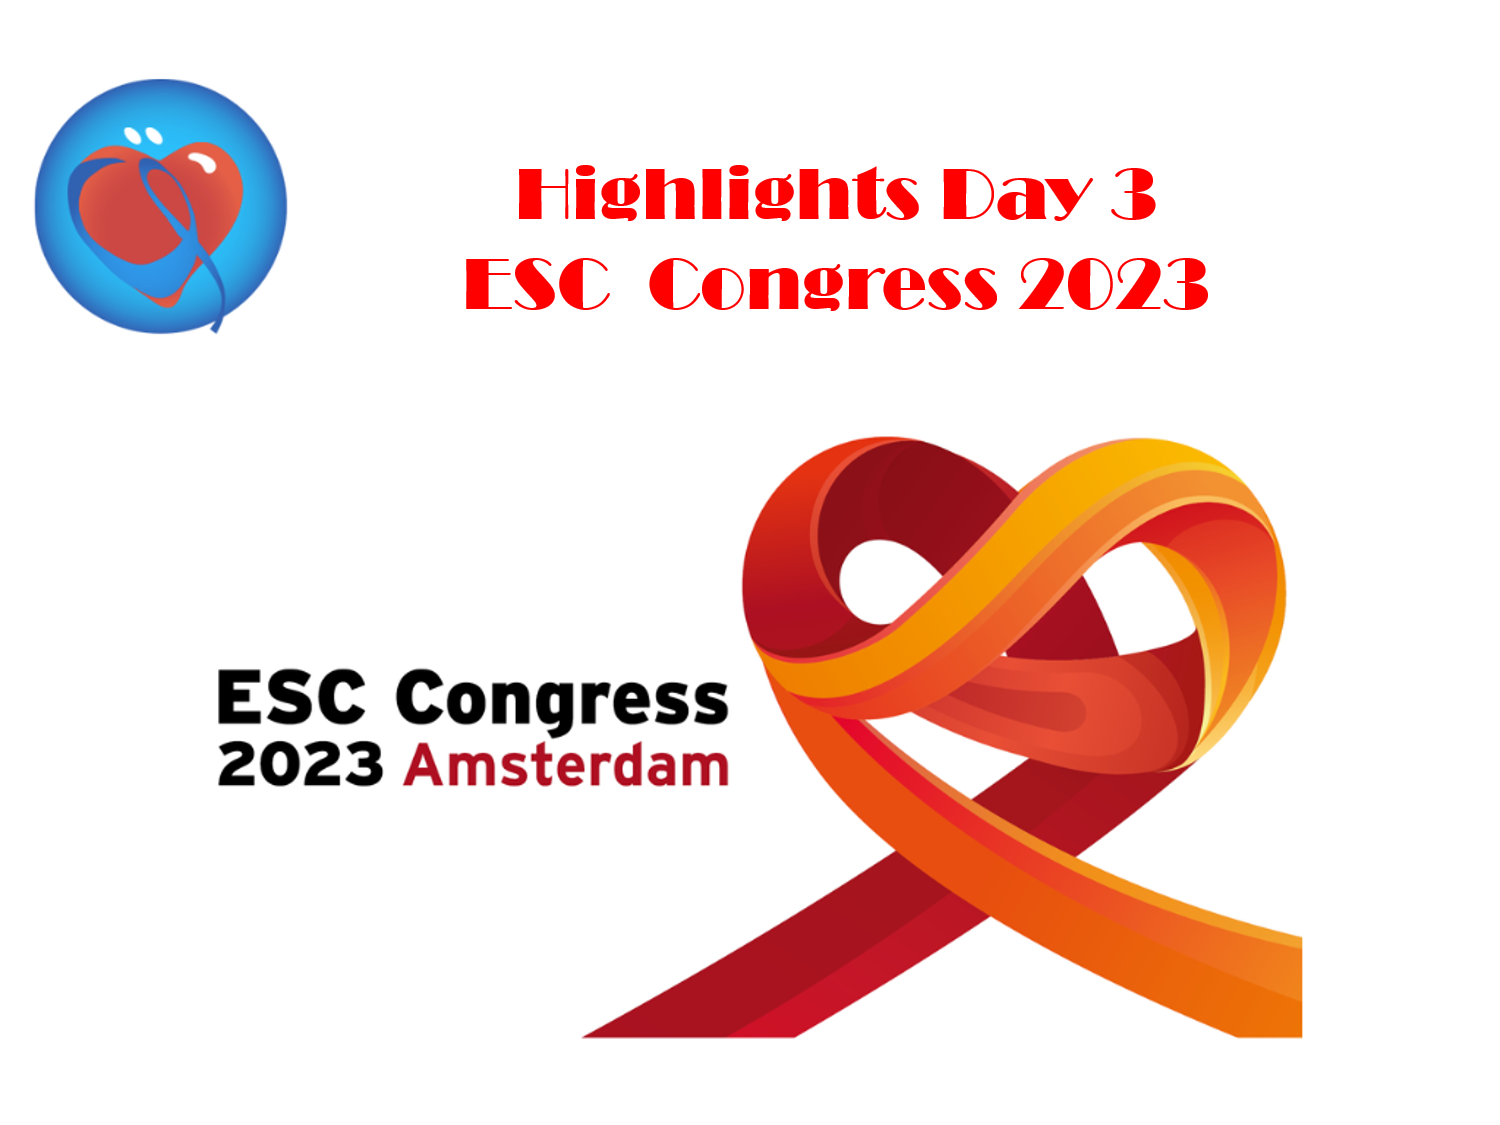 Les highlights du Congrès Européen de Cardiologie , ESC 2023, 3ème Jour